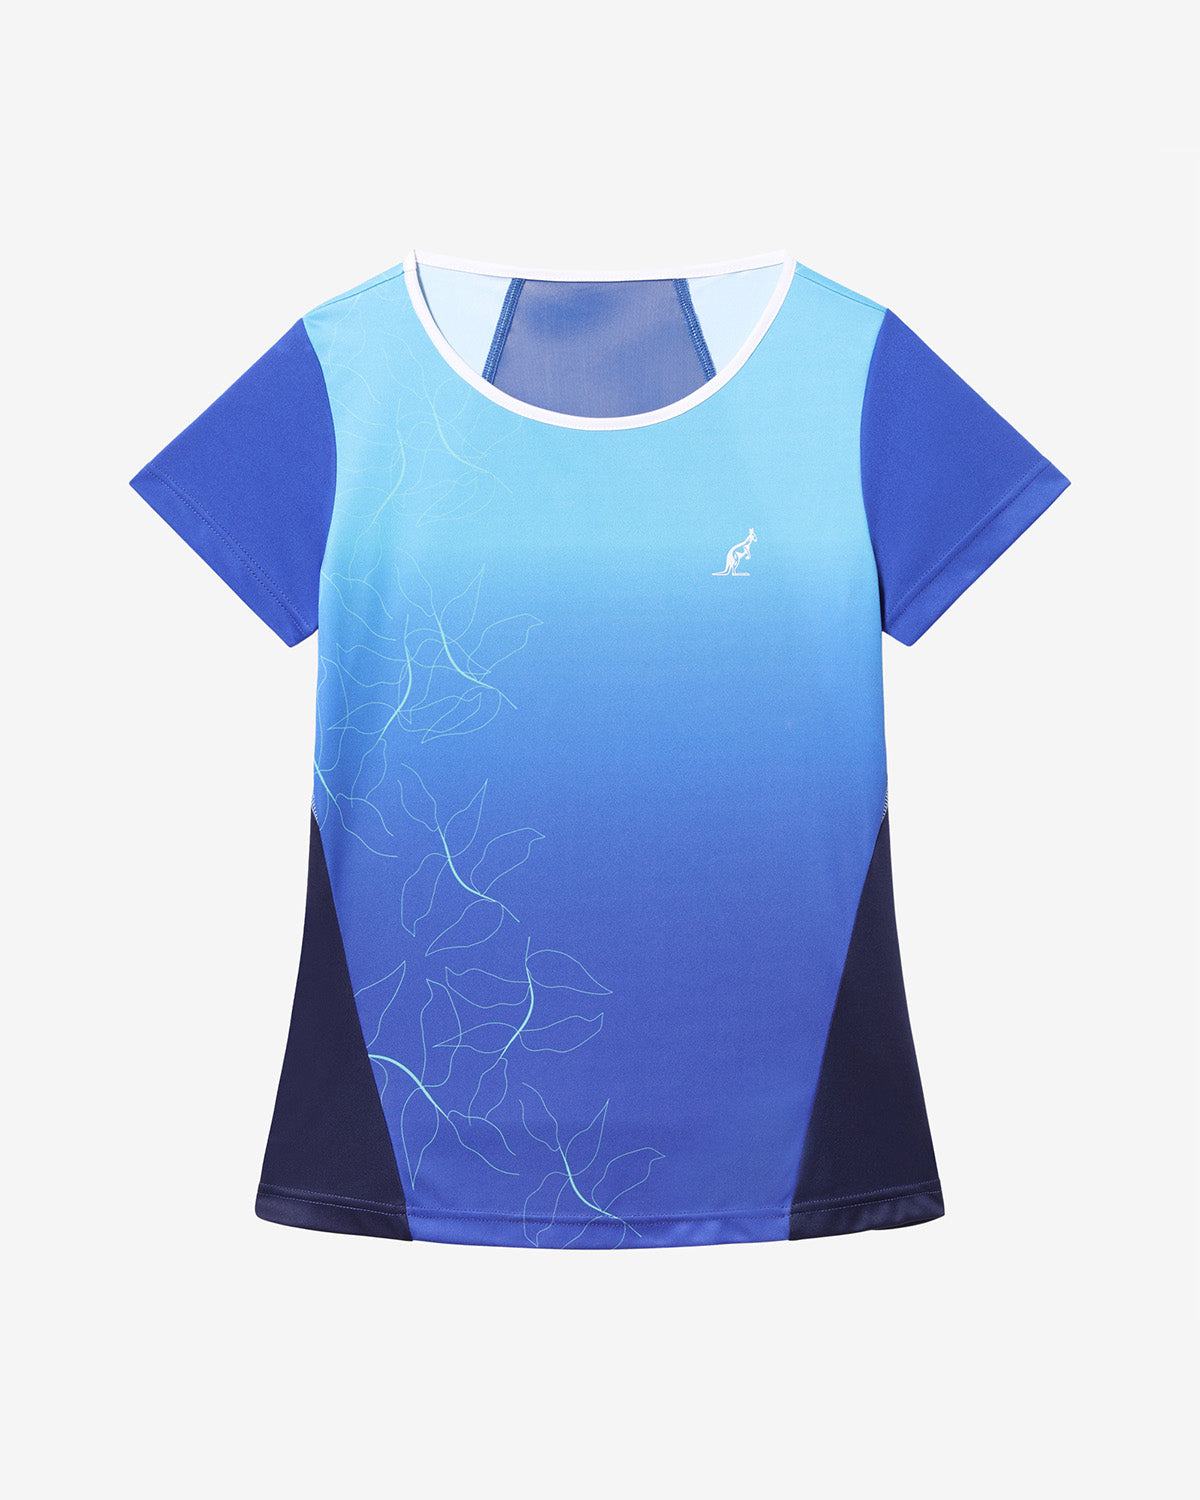 Blue Grade T-shirt: Australian Tennis